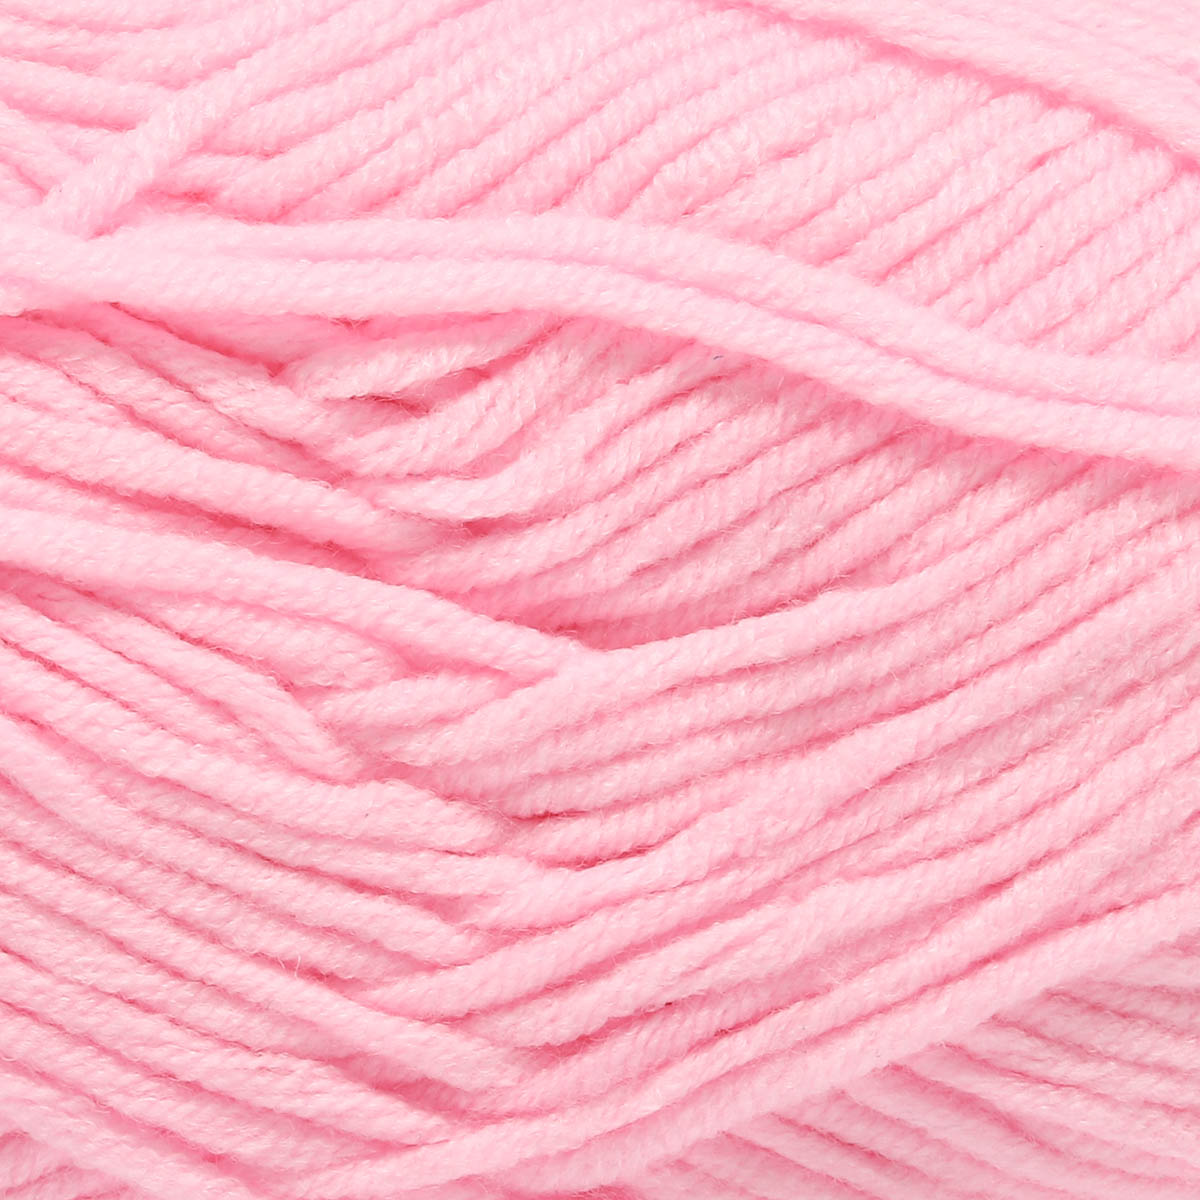 Пряжа для вязания Astra Premium milk cotton хлопок акрил 50 гр 100 м 02 нежно-розовый 3 мотка - фото 11